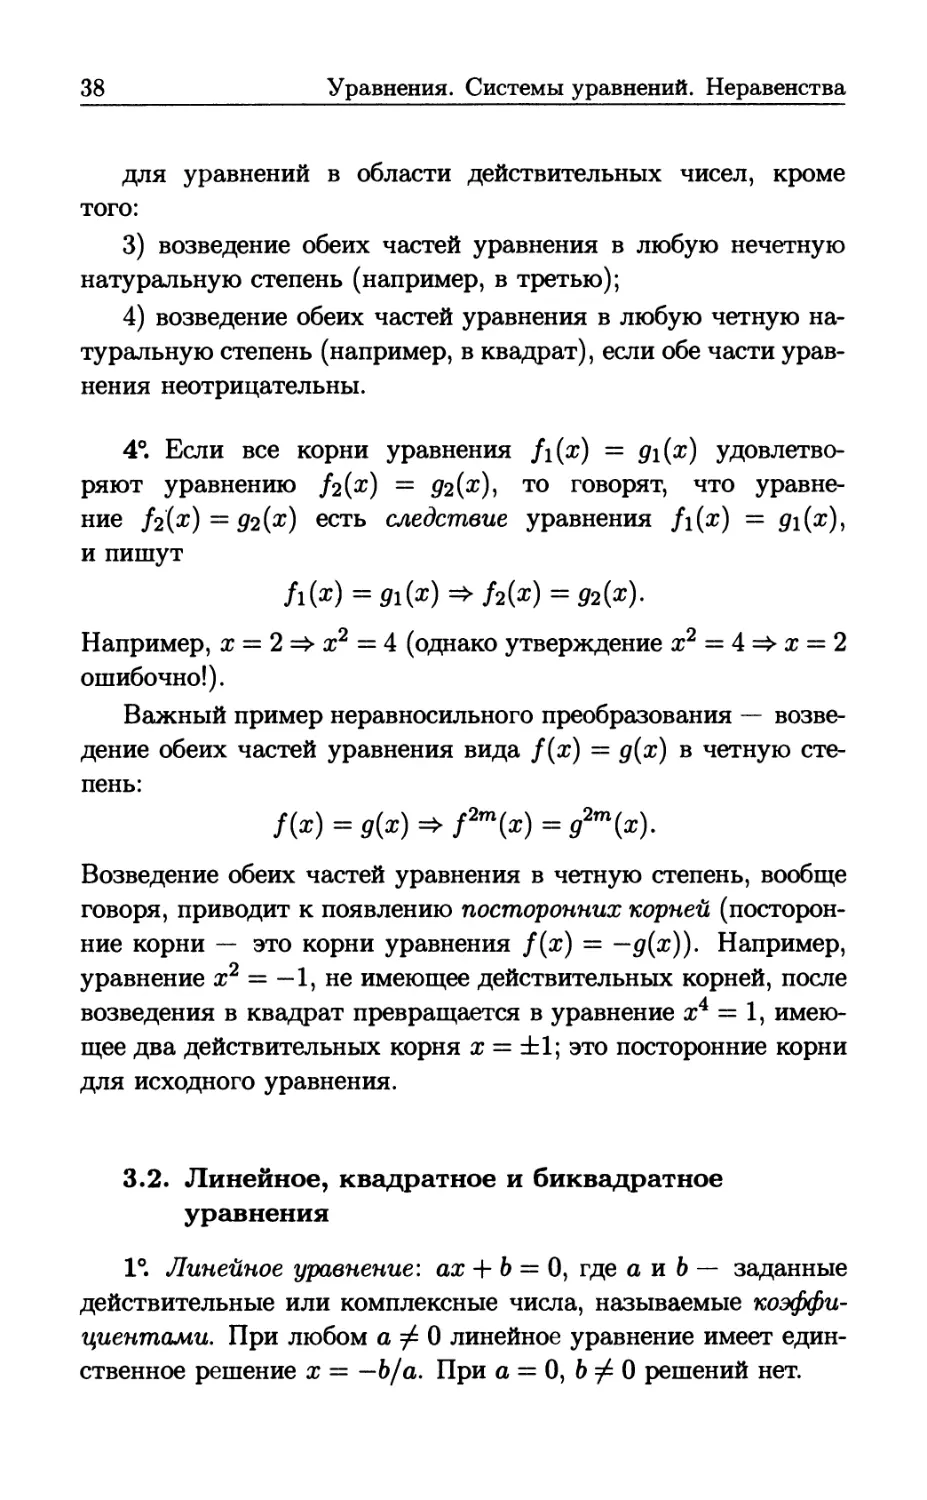 3.2. Линейное, квадратное и биквадратное уравнения